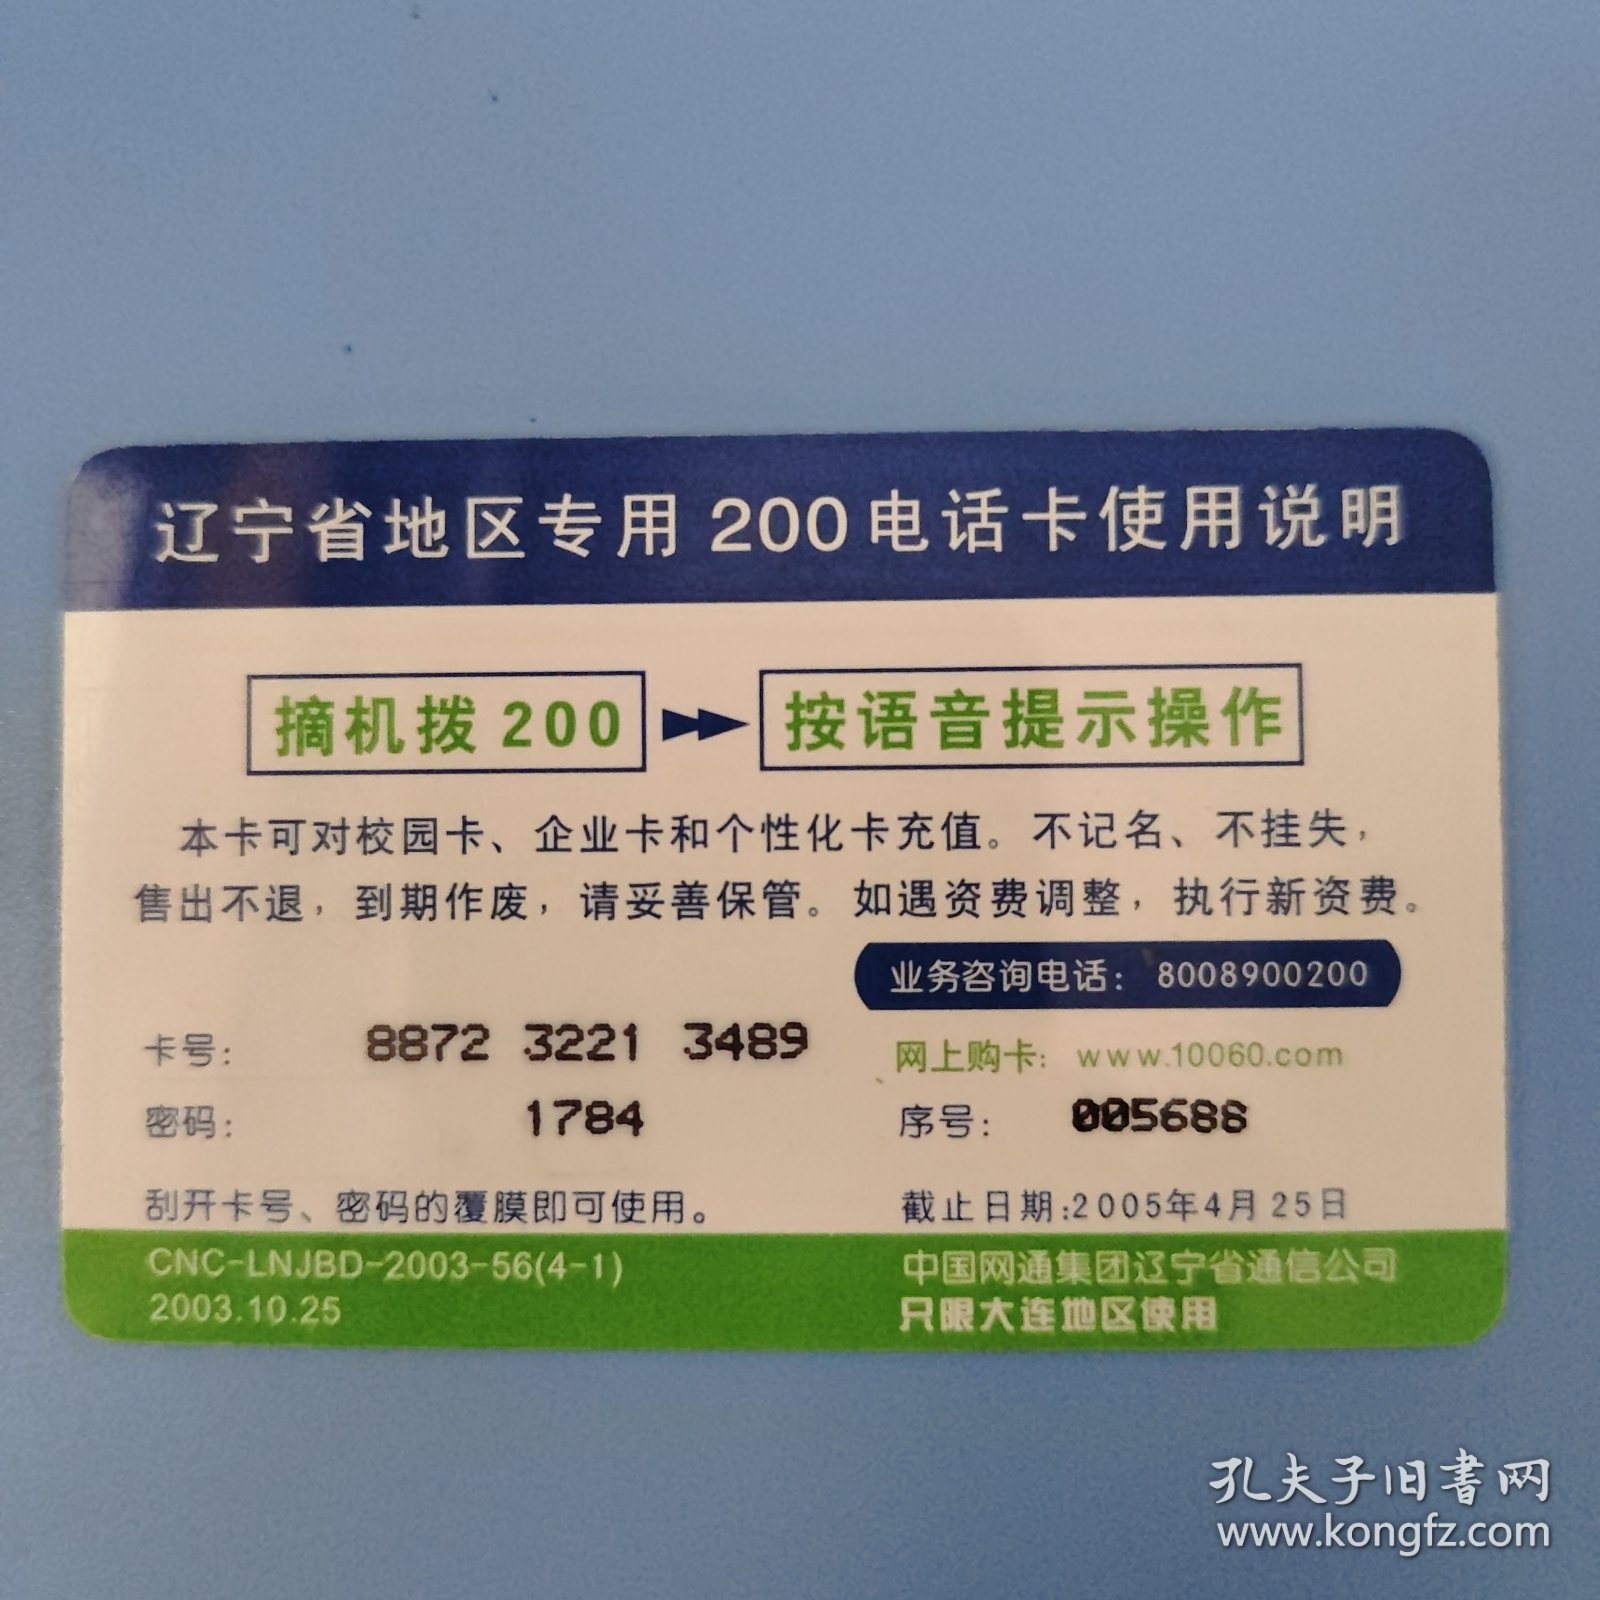 中国网通 200电话卡 CNC-LNJBD-2003-56(4-1)希望